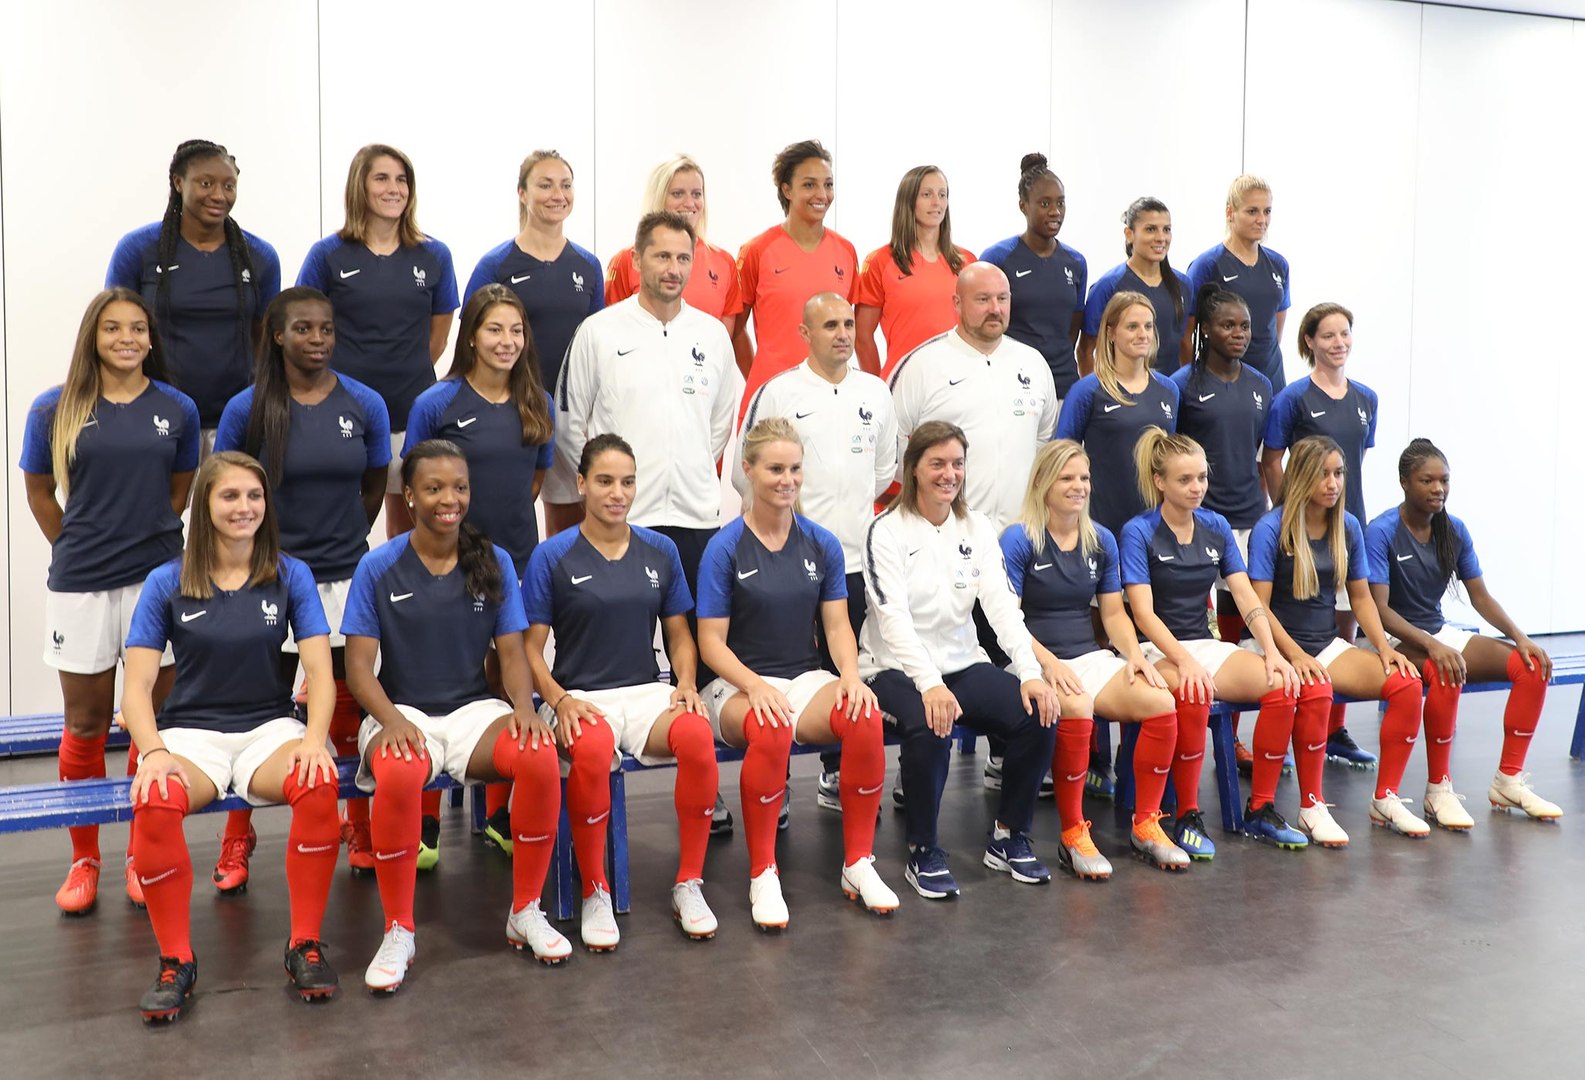 Equipe de France Féminine : les coulisses de la photo officielle 2018-2019  I FFF 2018 - Vidéo Dailymotion